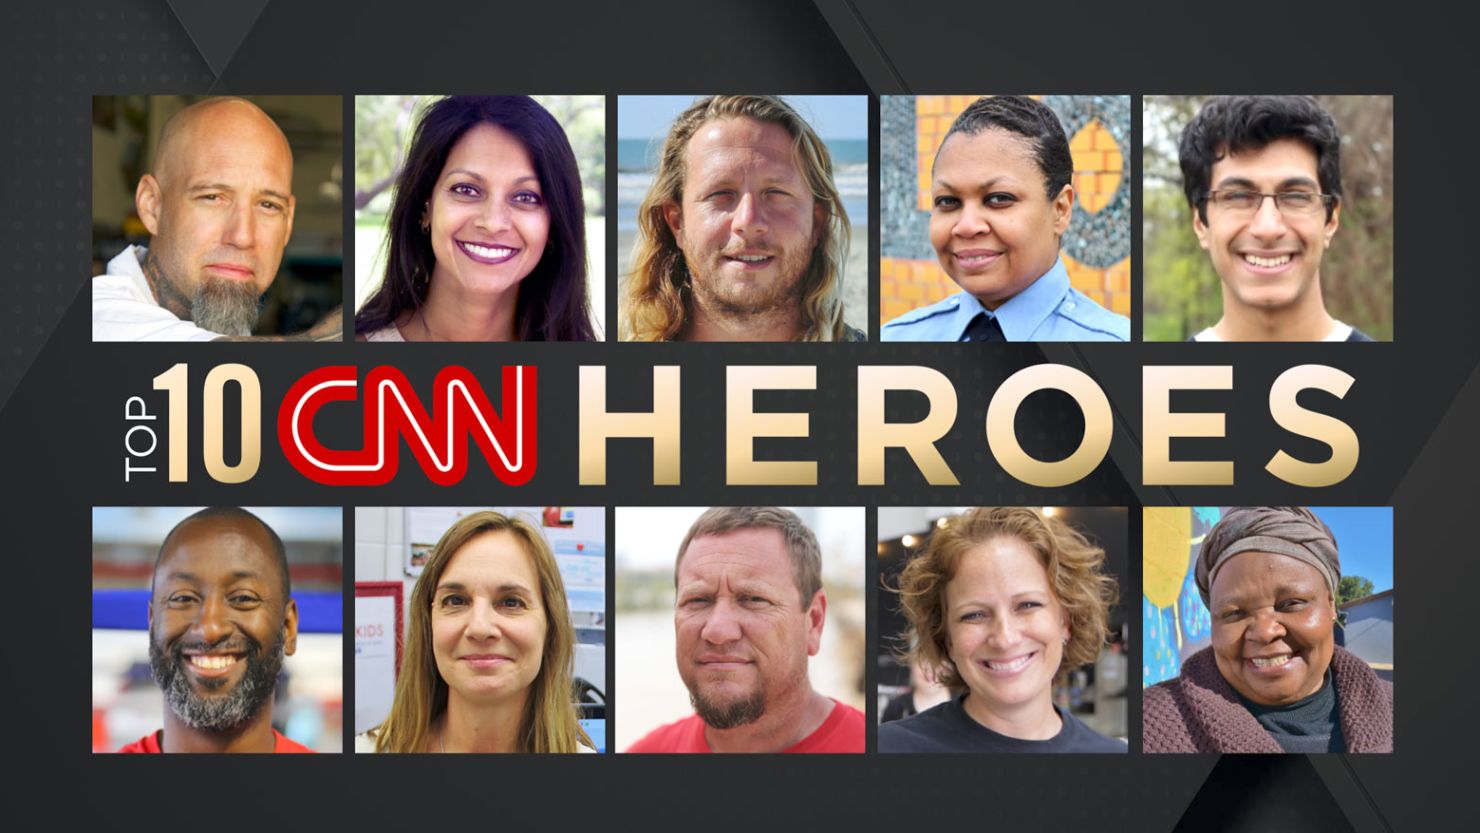 The Top 10 CNN Heroes of 2017